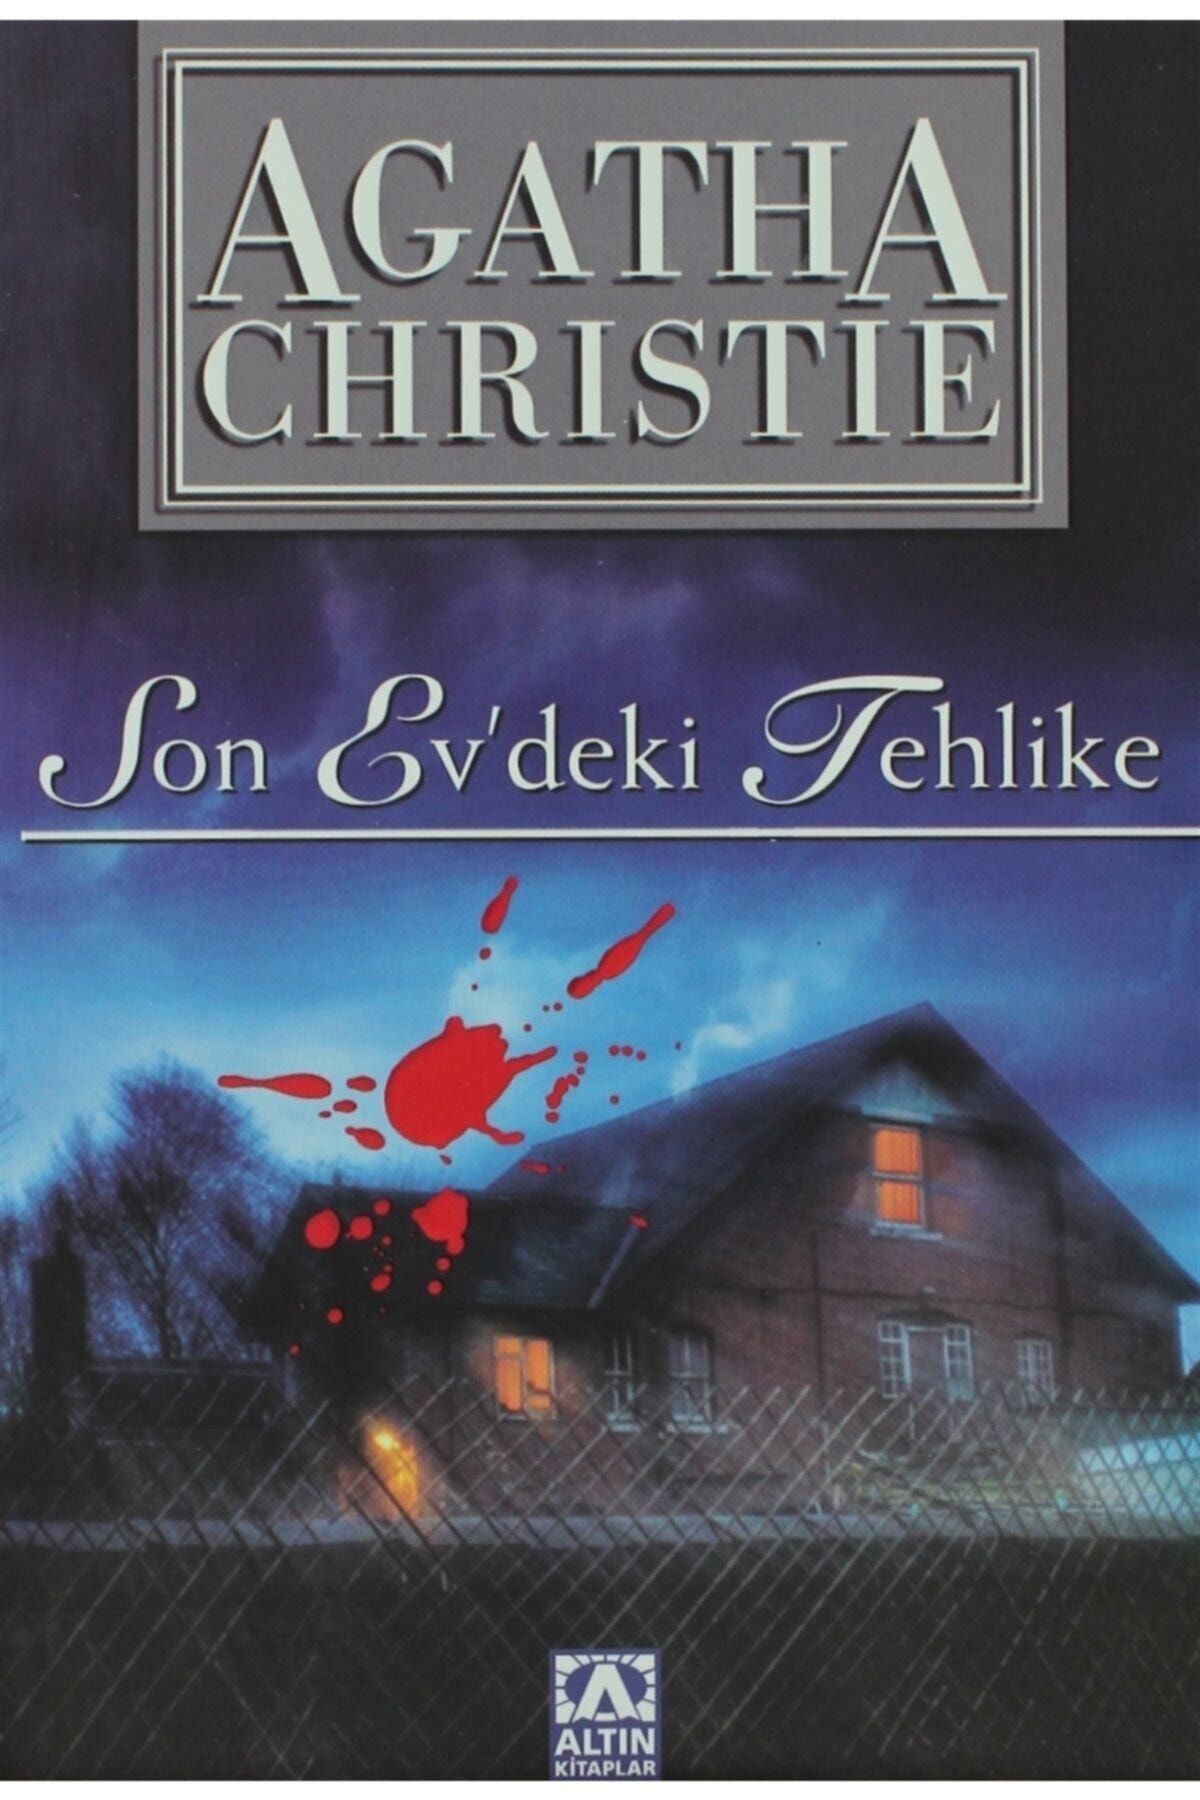 Altın Kitaplar Son Evdeki Tehlike - Agatha Christie